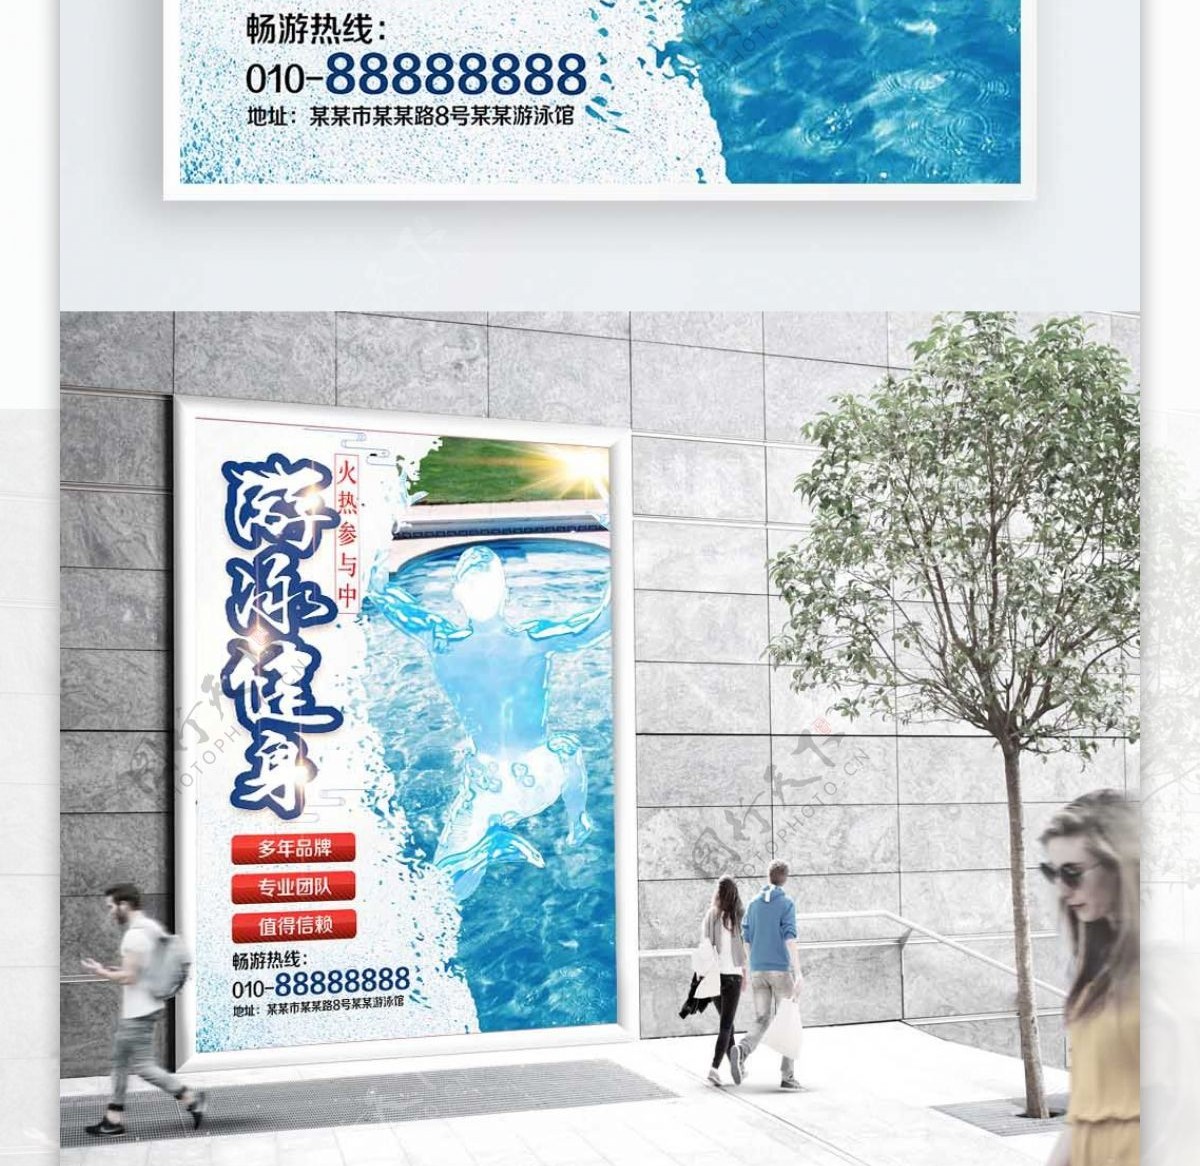 蓝色背景简约大方游泳健身宣传海报